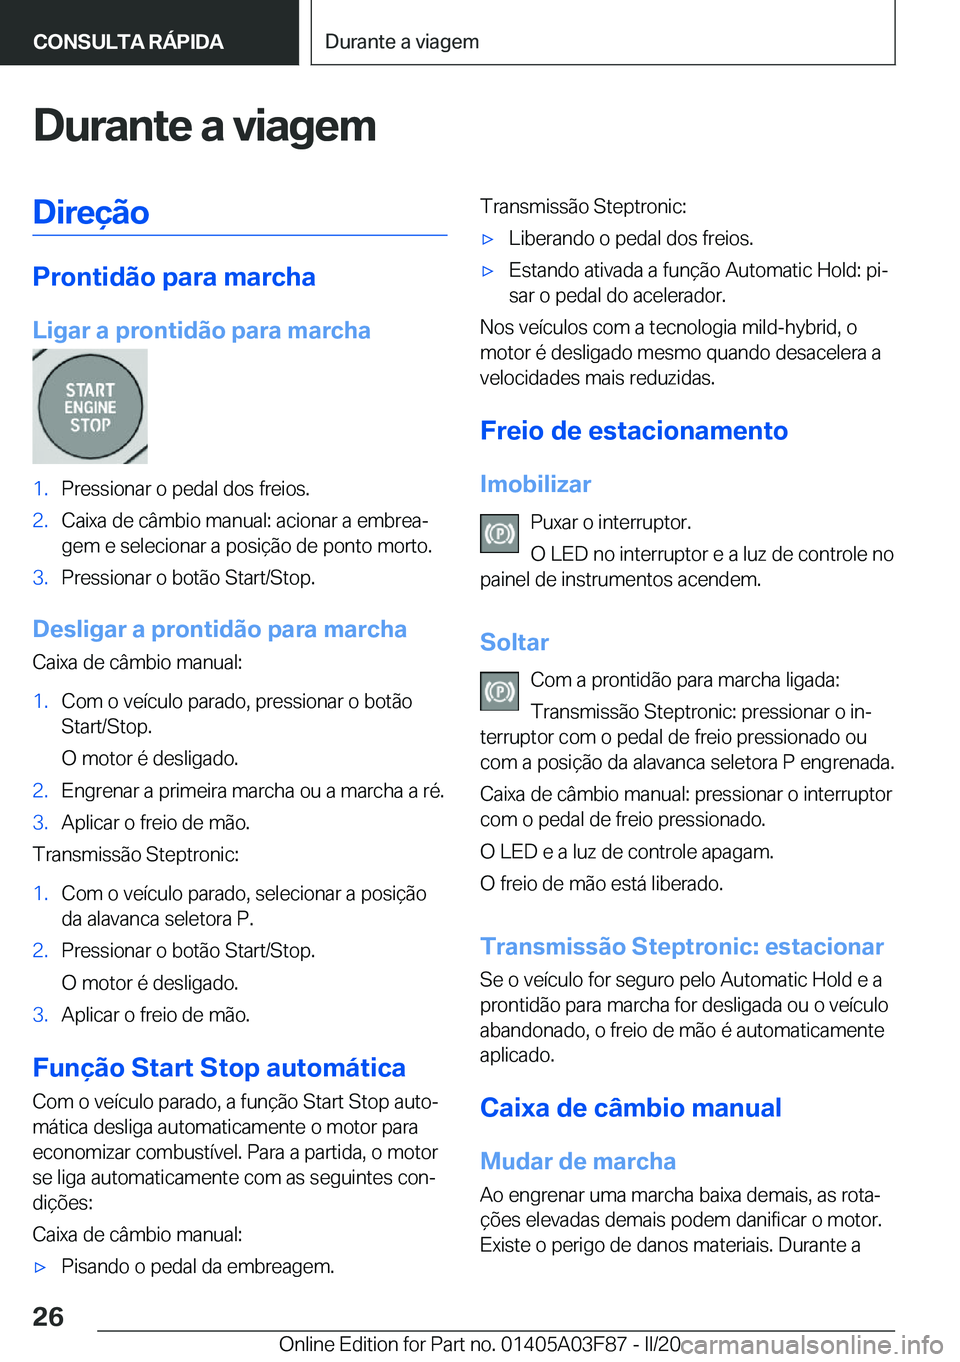 BMW 3 SERIES 2020  Manual do condutor (in Portuguese) �D�u�r�a�n�t�e��a��v�i�a�g�e�m�D�i�r�e�